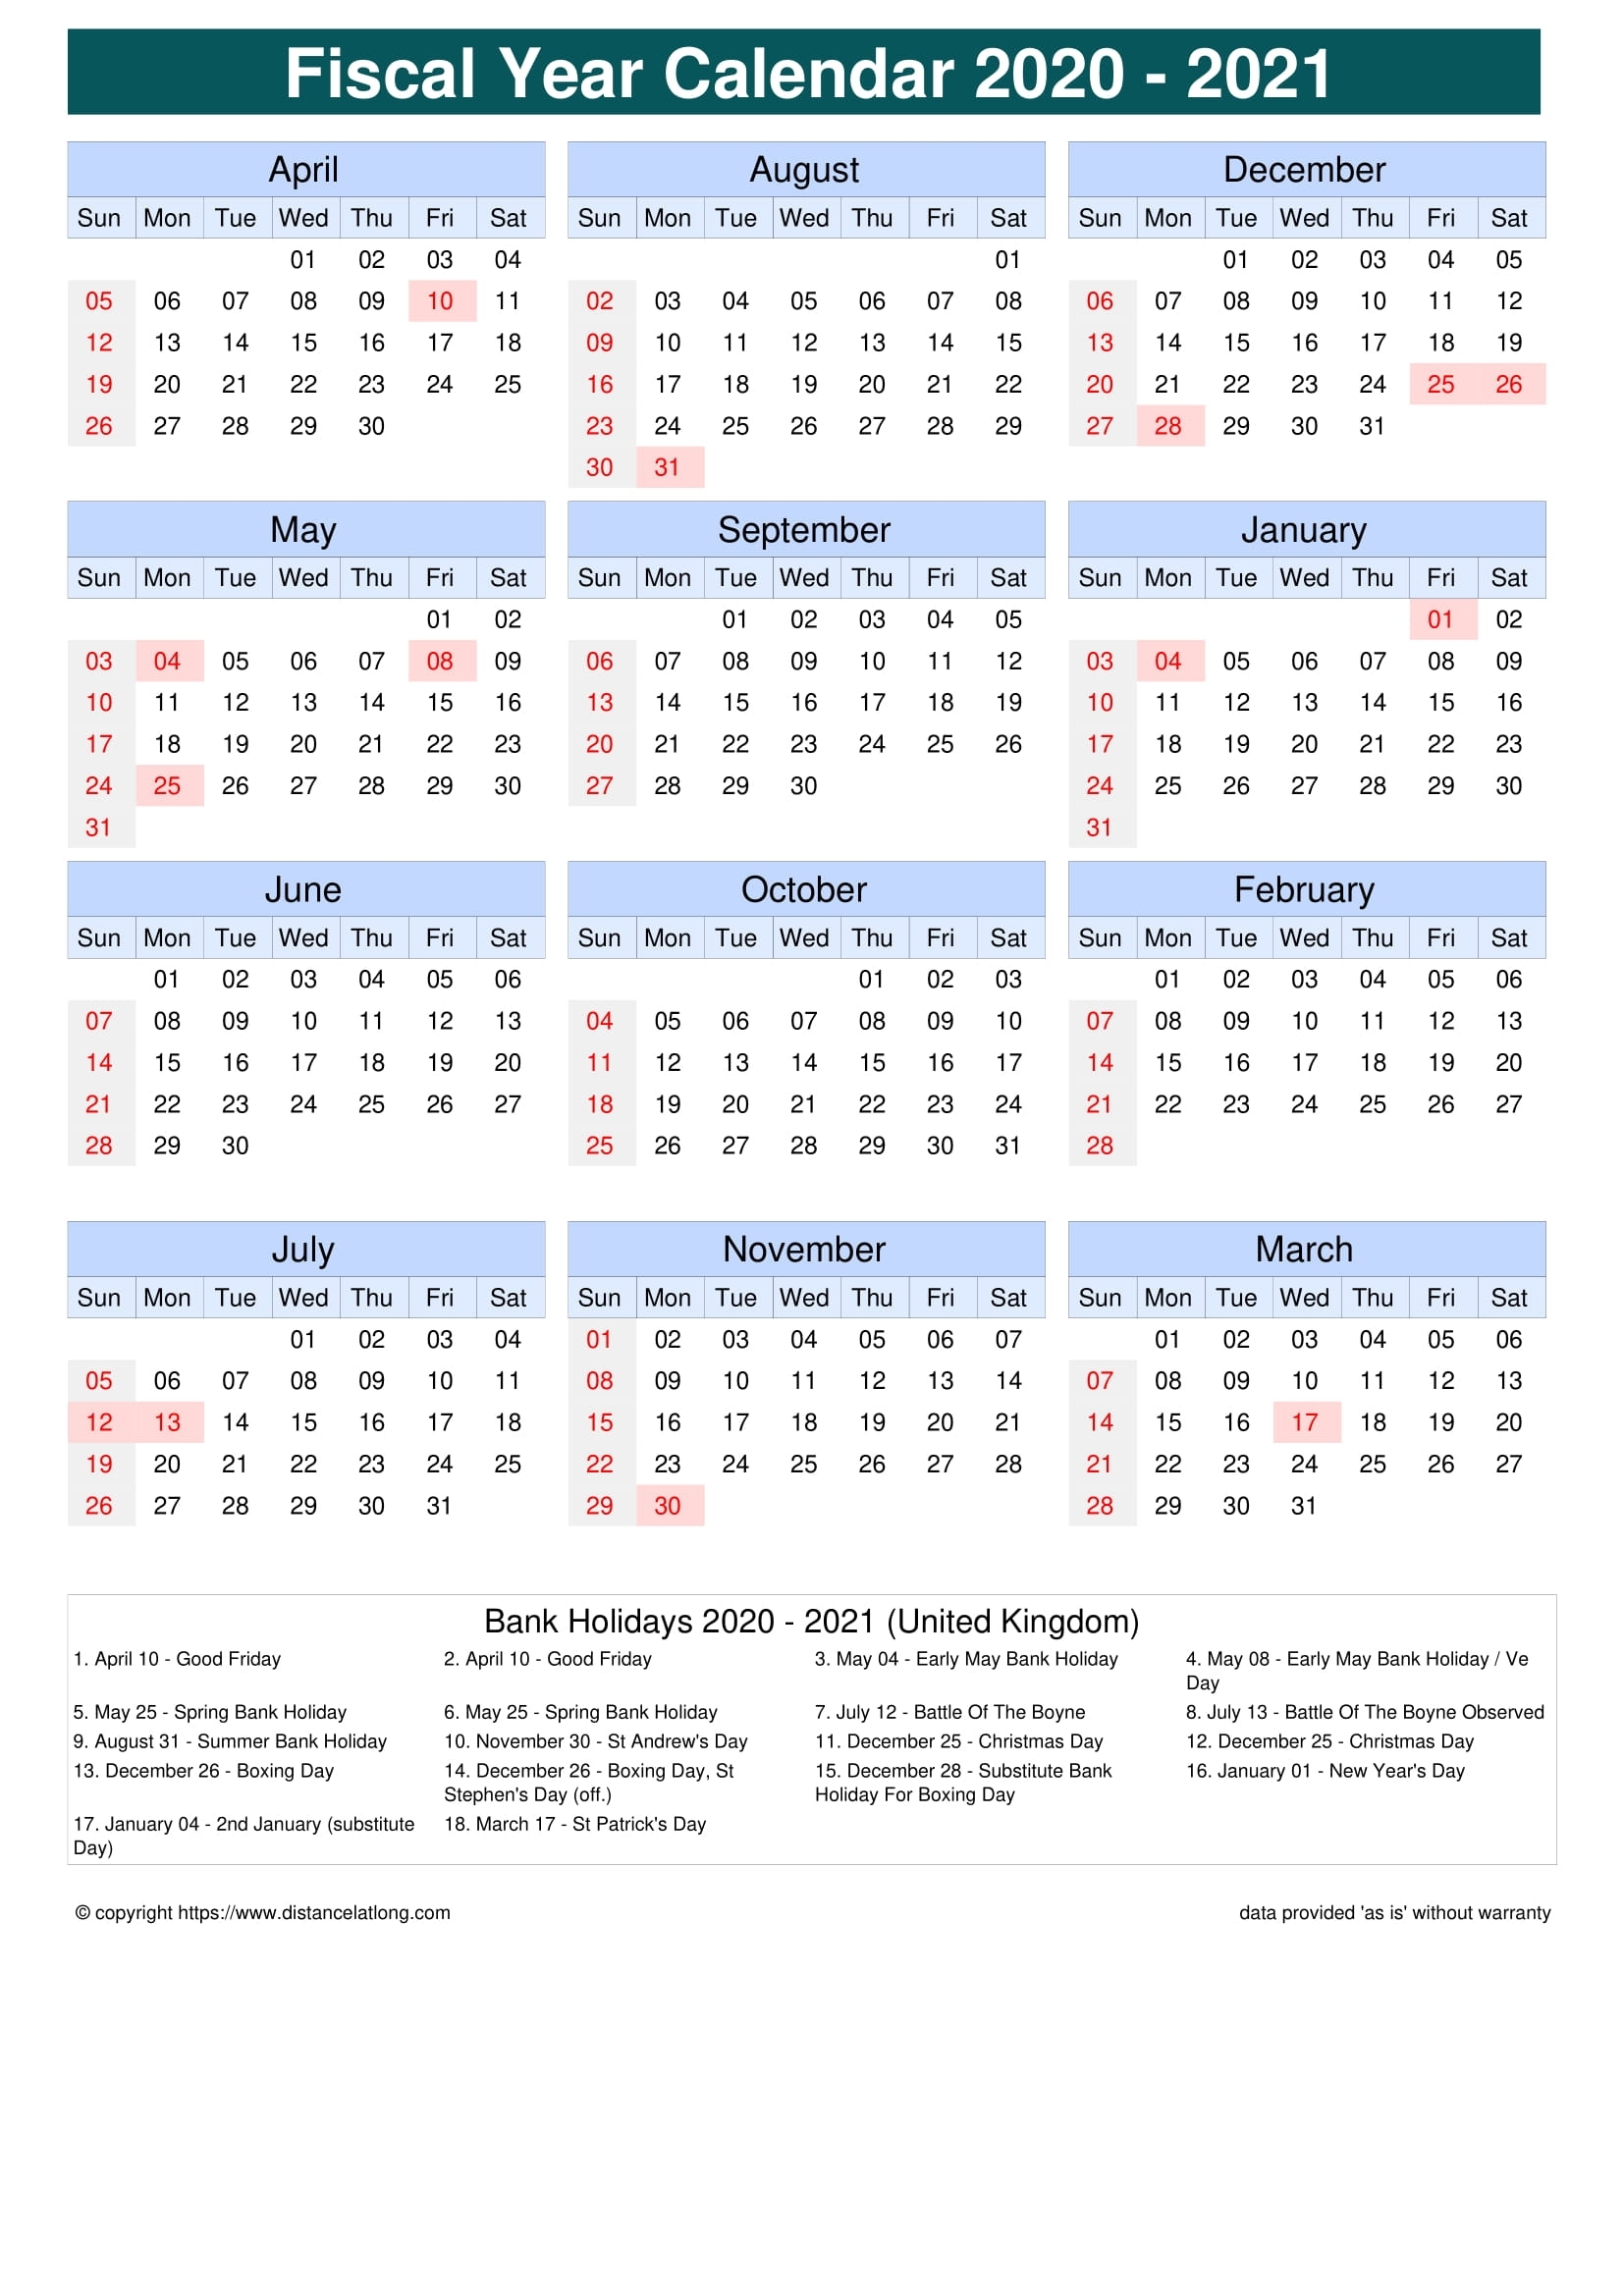 Get 2021 Financial Calendar With Week Numbers